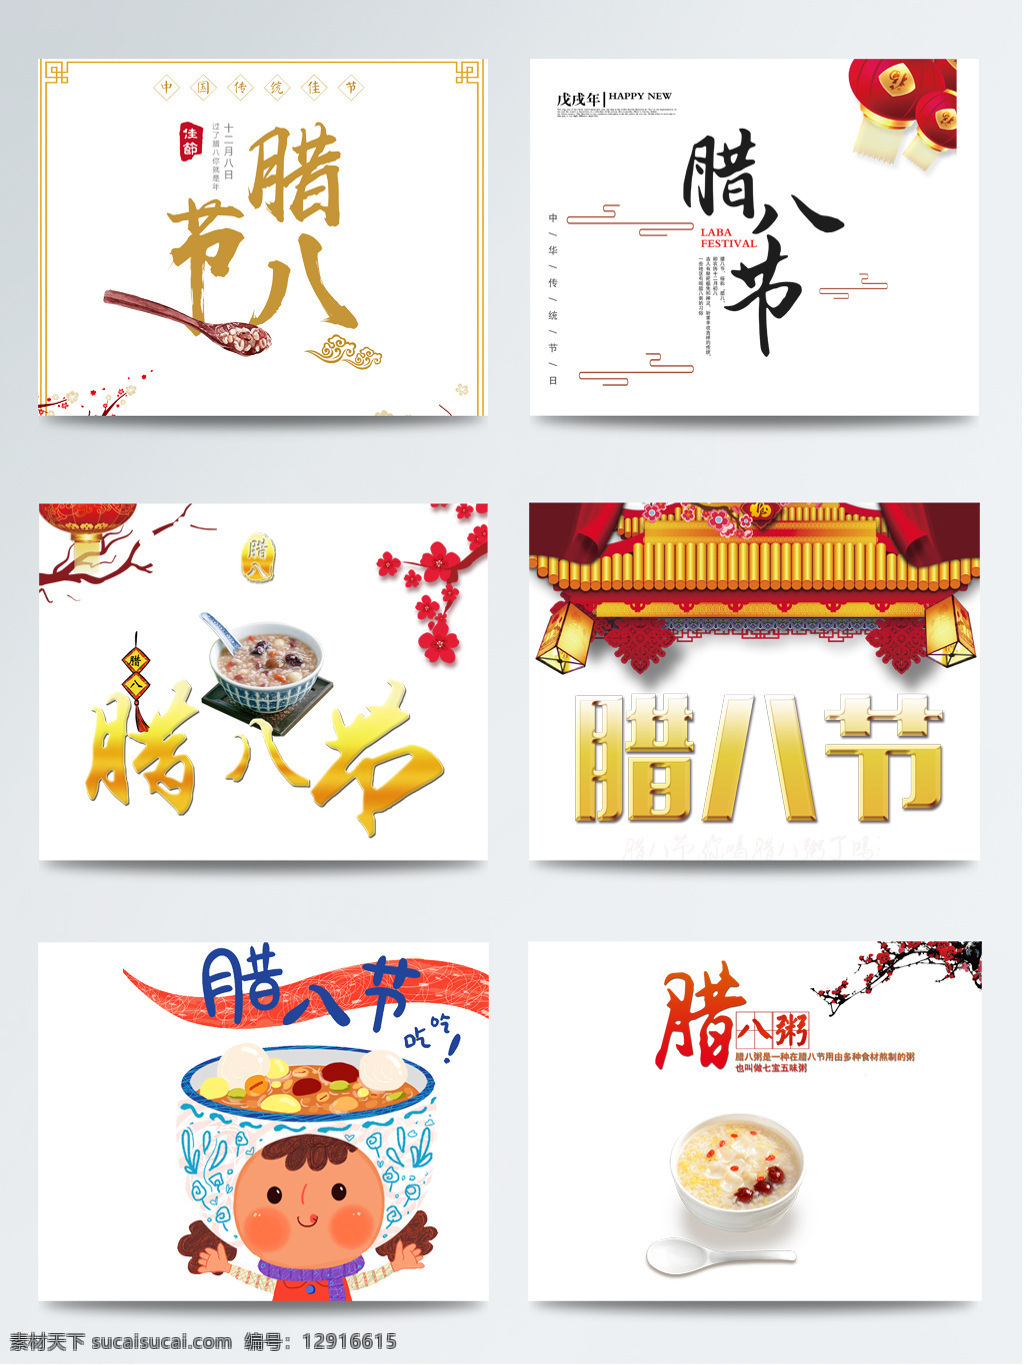 中国 传统 腊八节 设计素材 插画 传统节日 传统文化 传统习俗 创意 促销 海报 节日 腊八 腊八节素材 免抠图 中国风